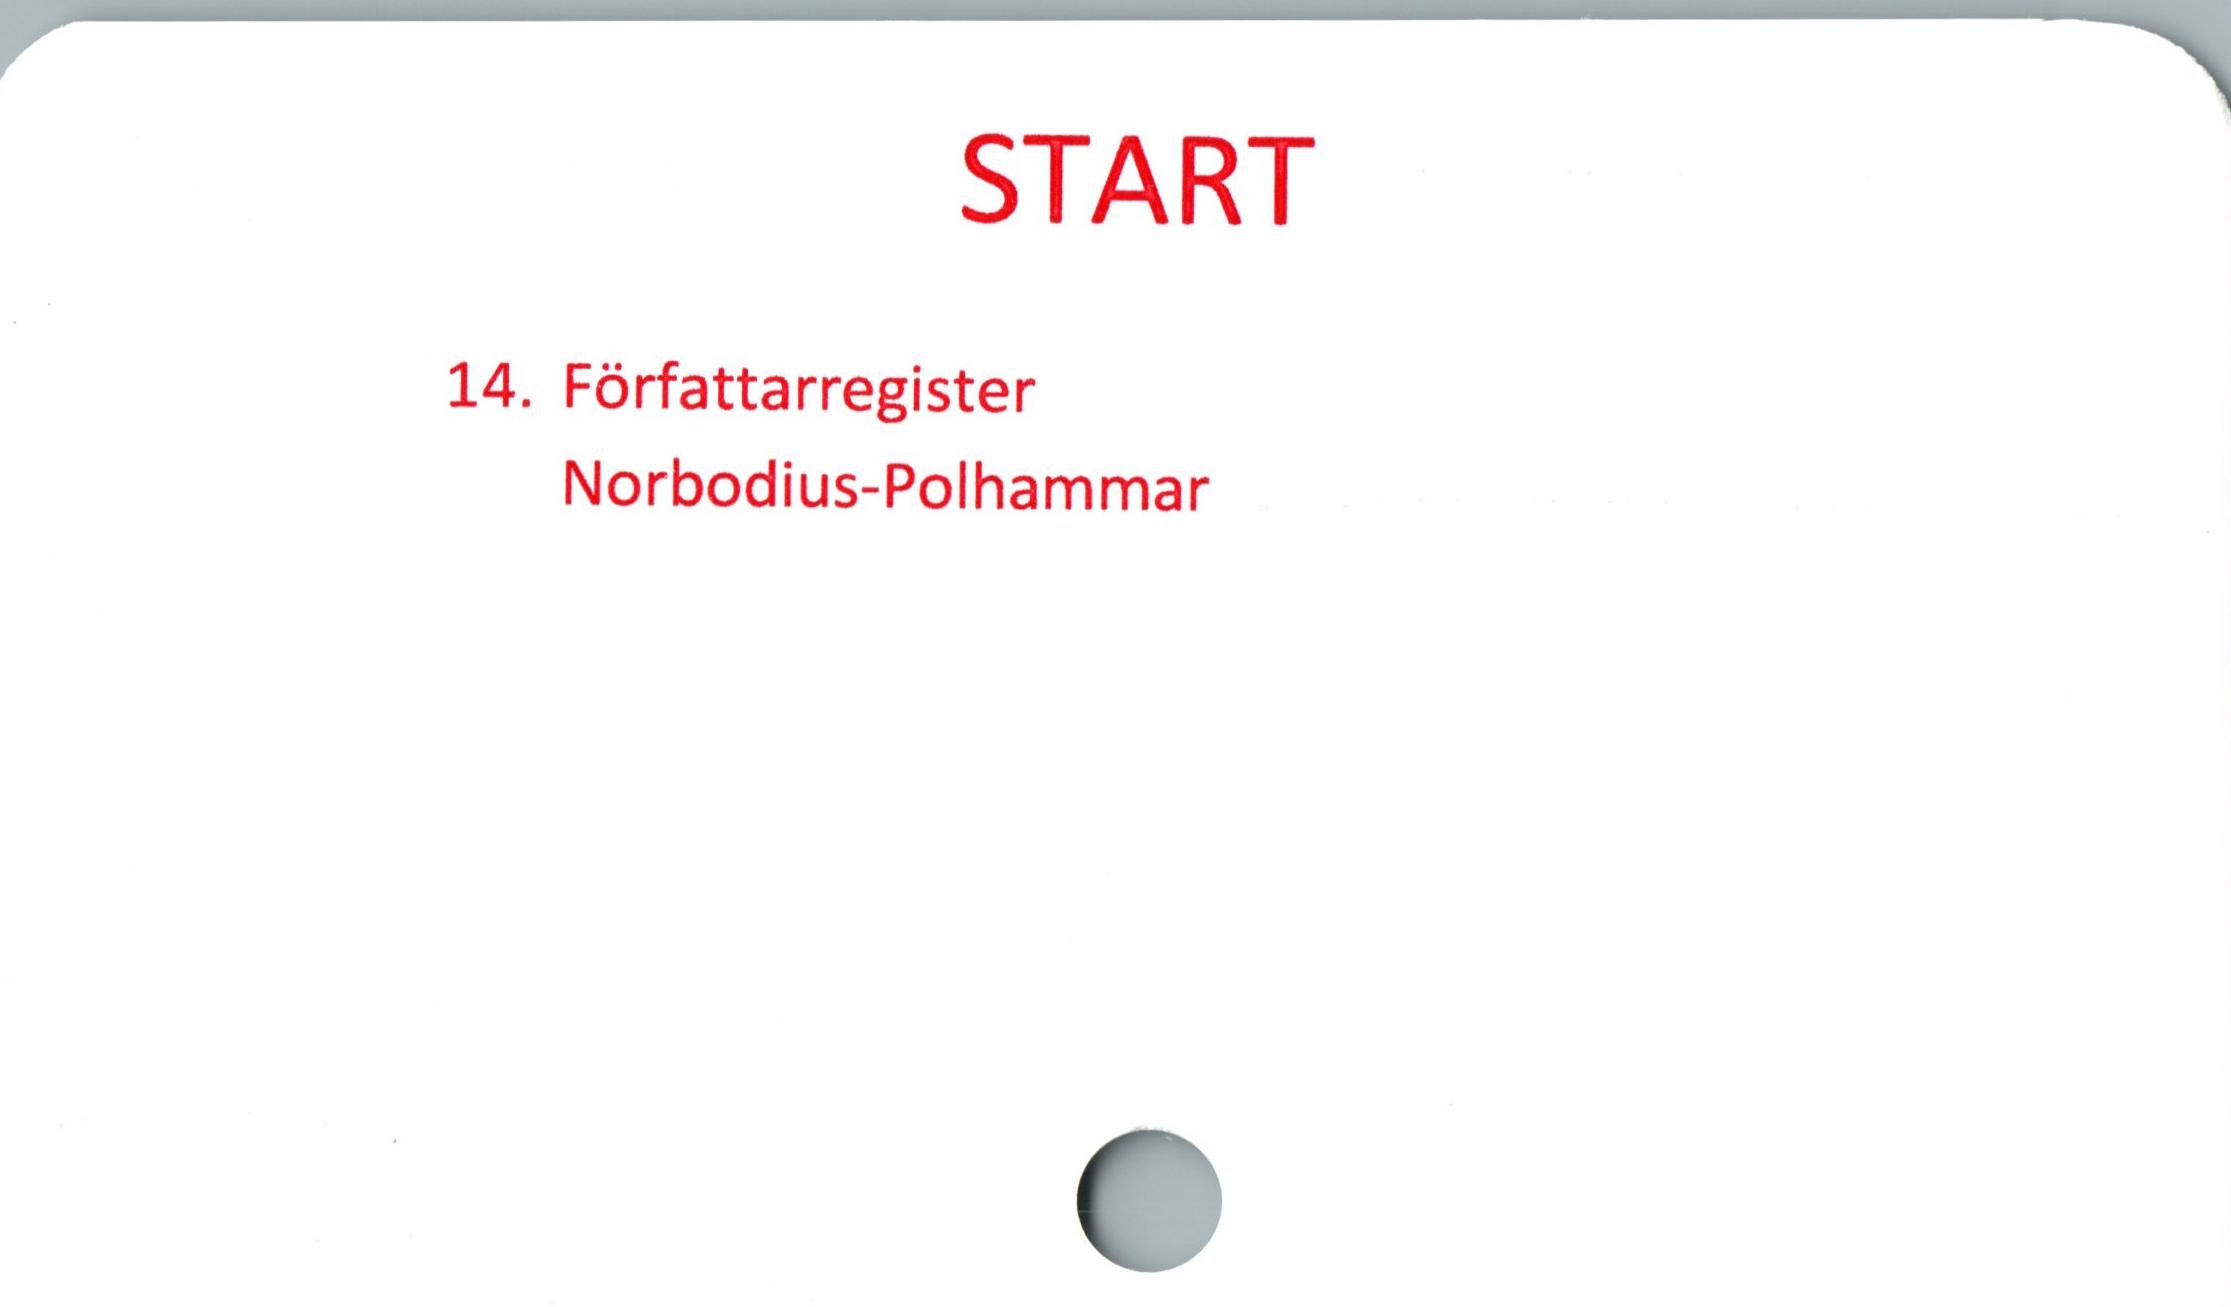  ﻿START

1

14. Författarregister

Norbodius-Polhammar